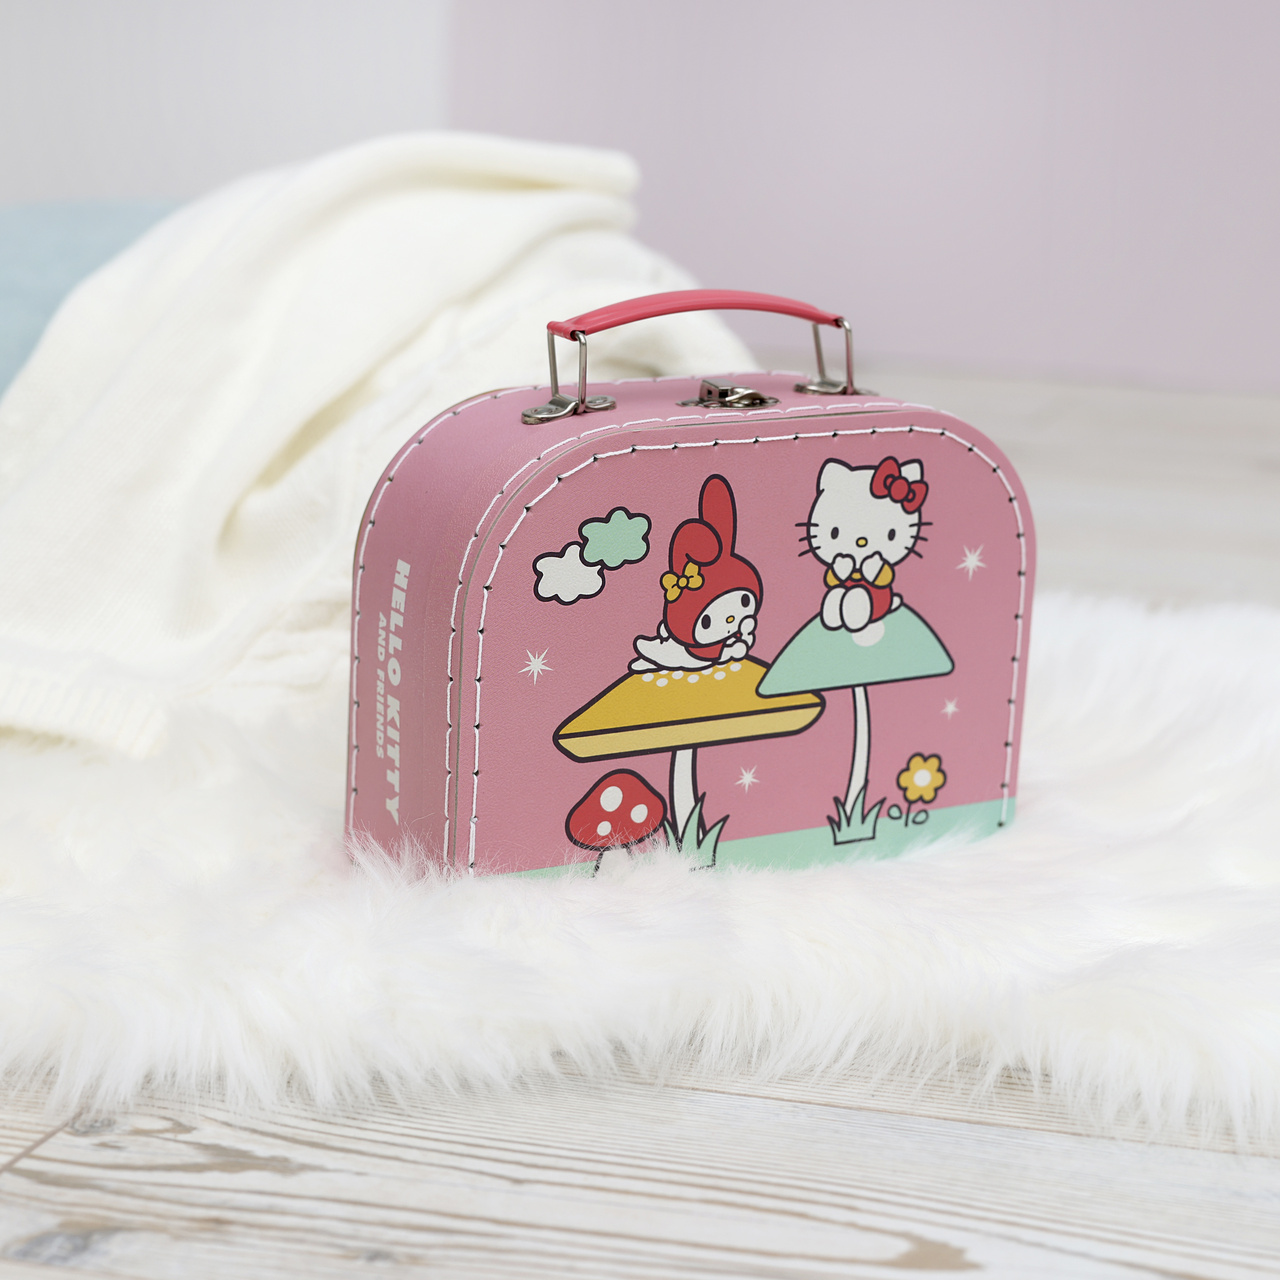 Kindertaschen & Accessoires hello kitty kindertasche pappkoffer 20 cm